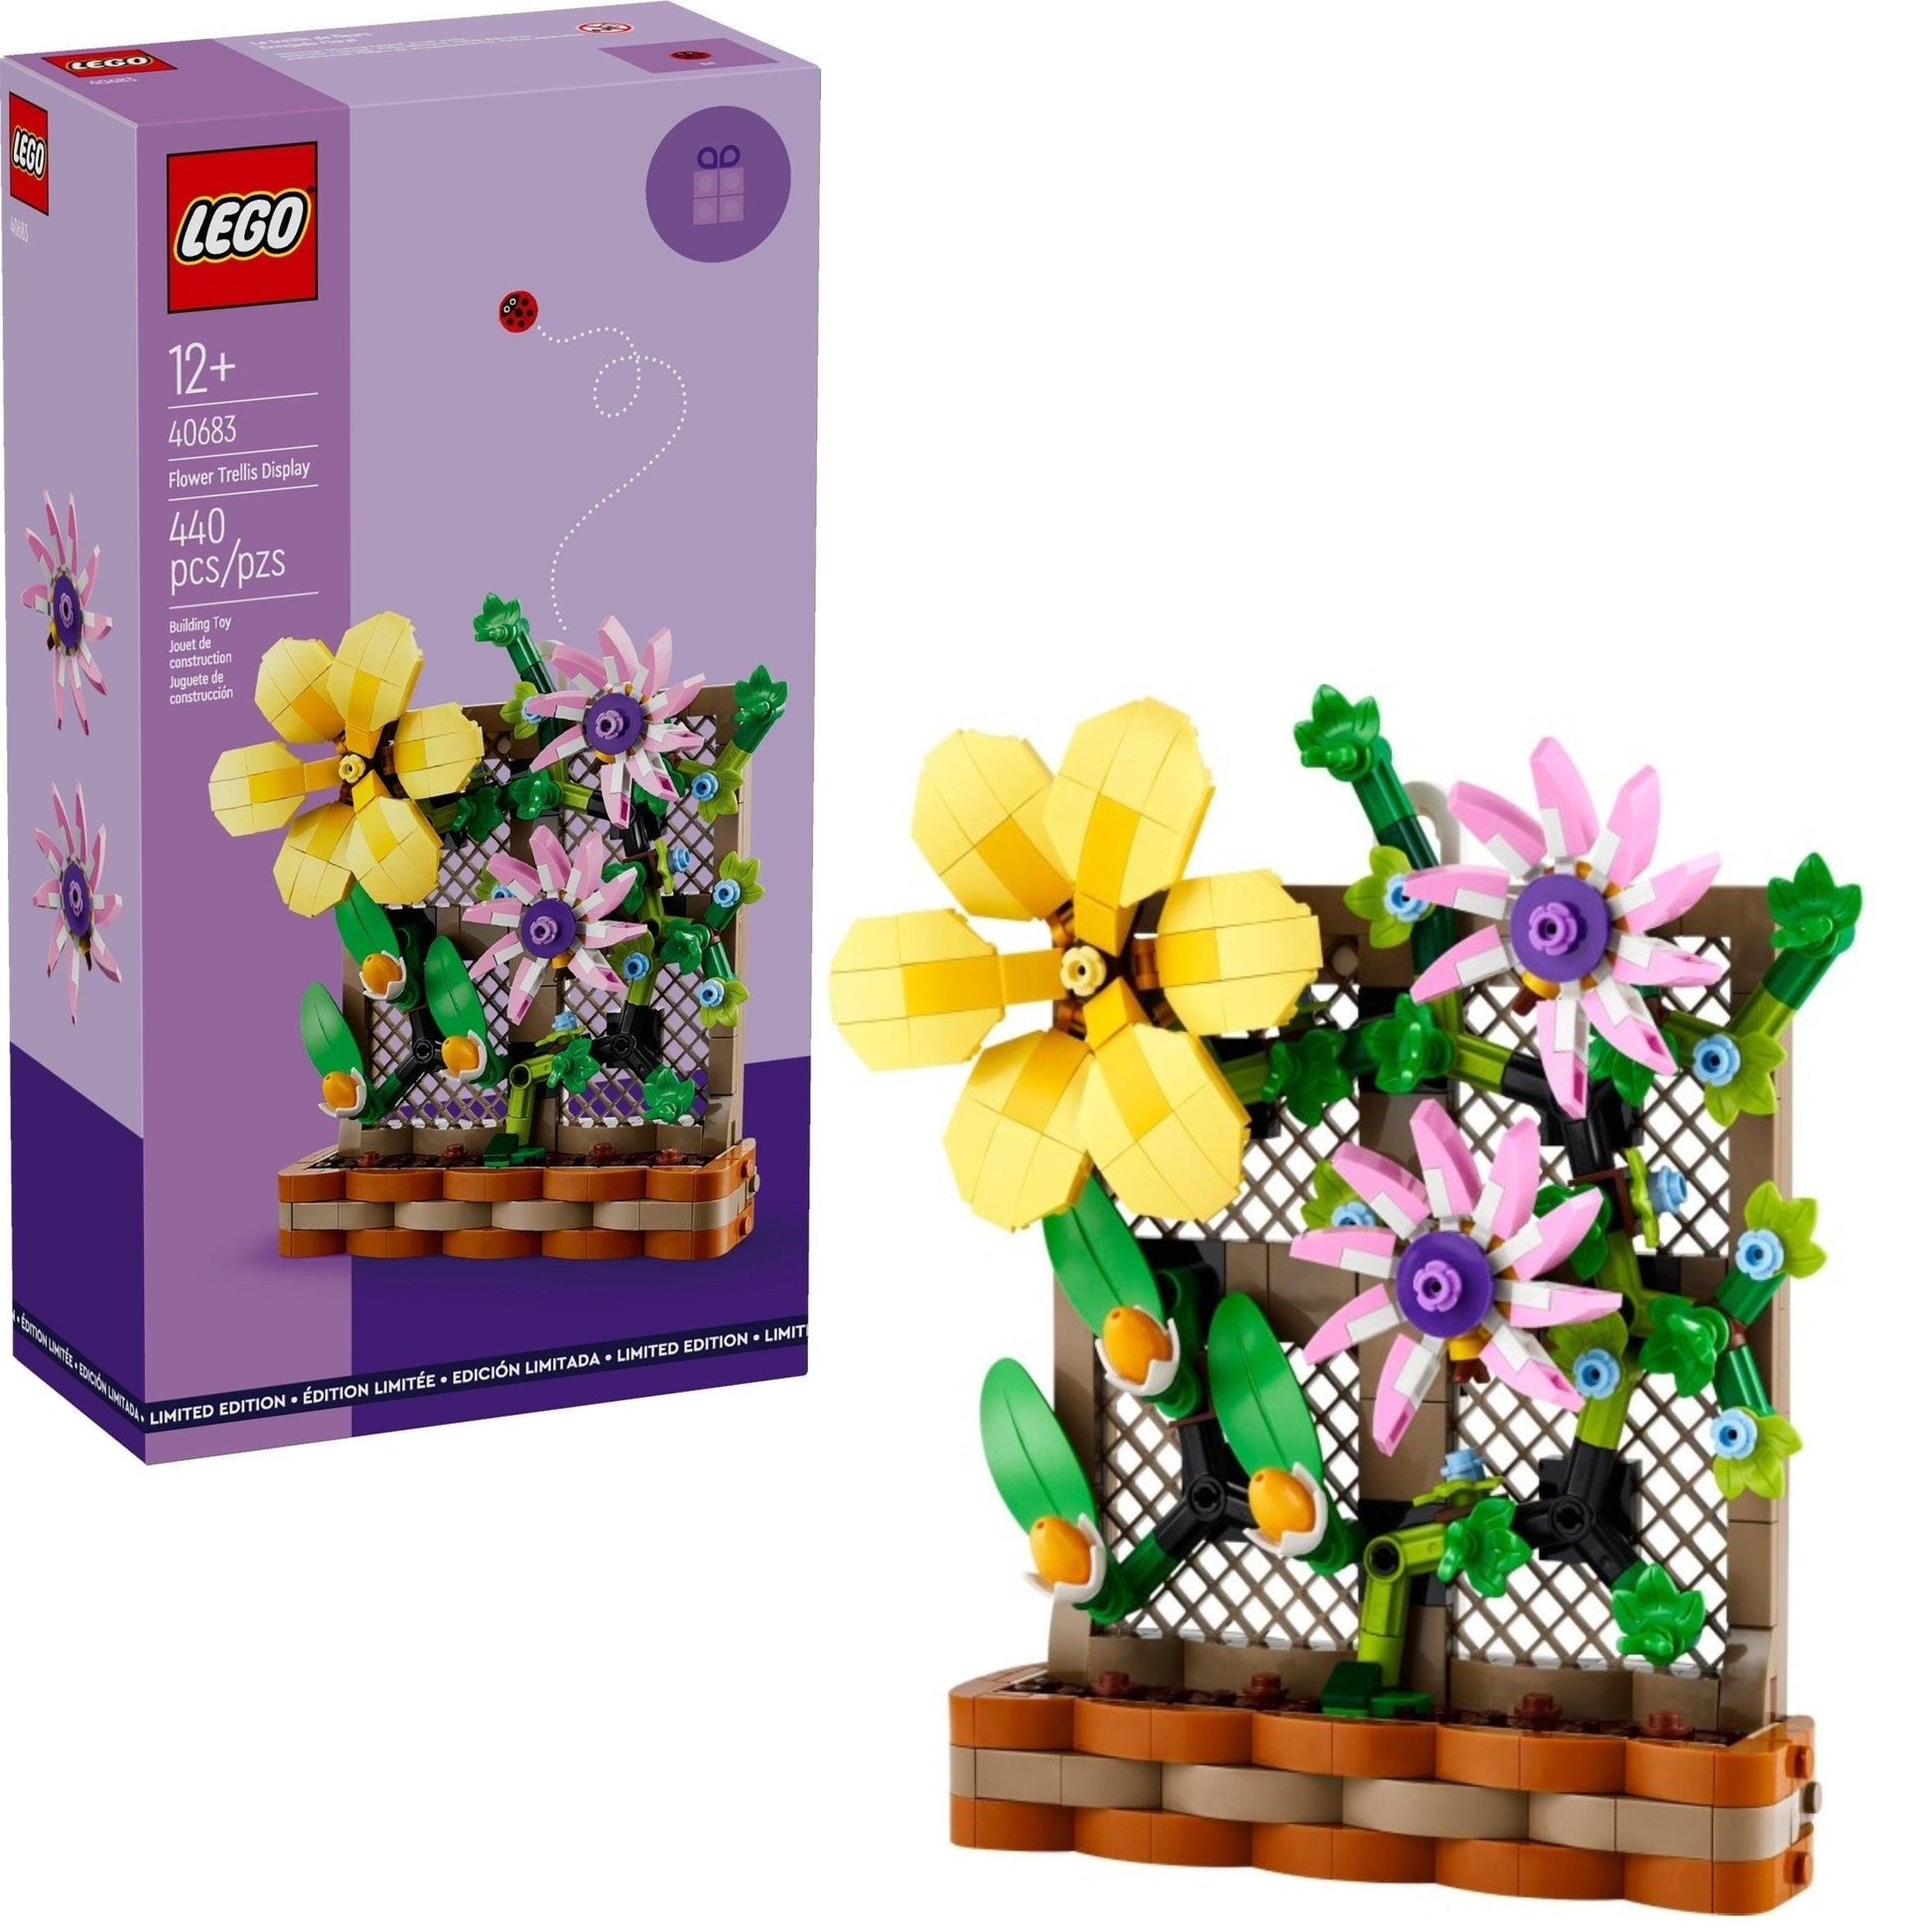 LEGO Flower Trellis Display 40683 Botanical LEGO BOTANICAL @ 2TTOYS LEGO €. 24.99